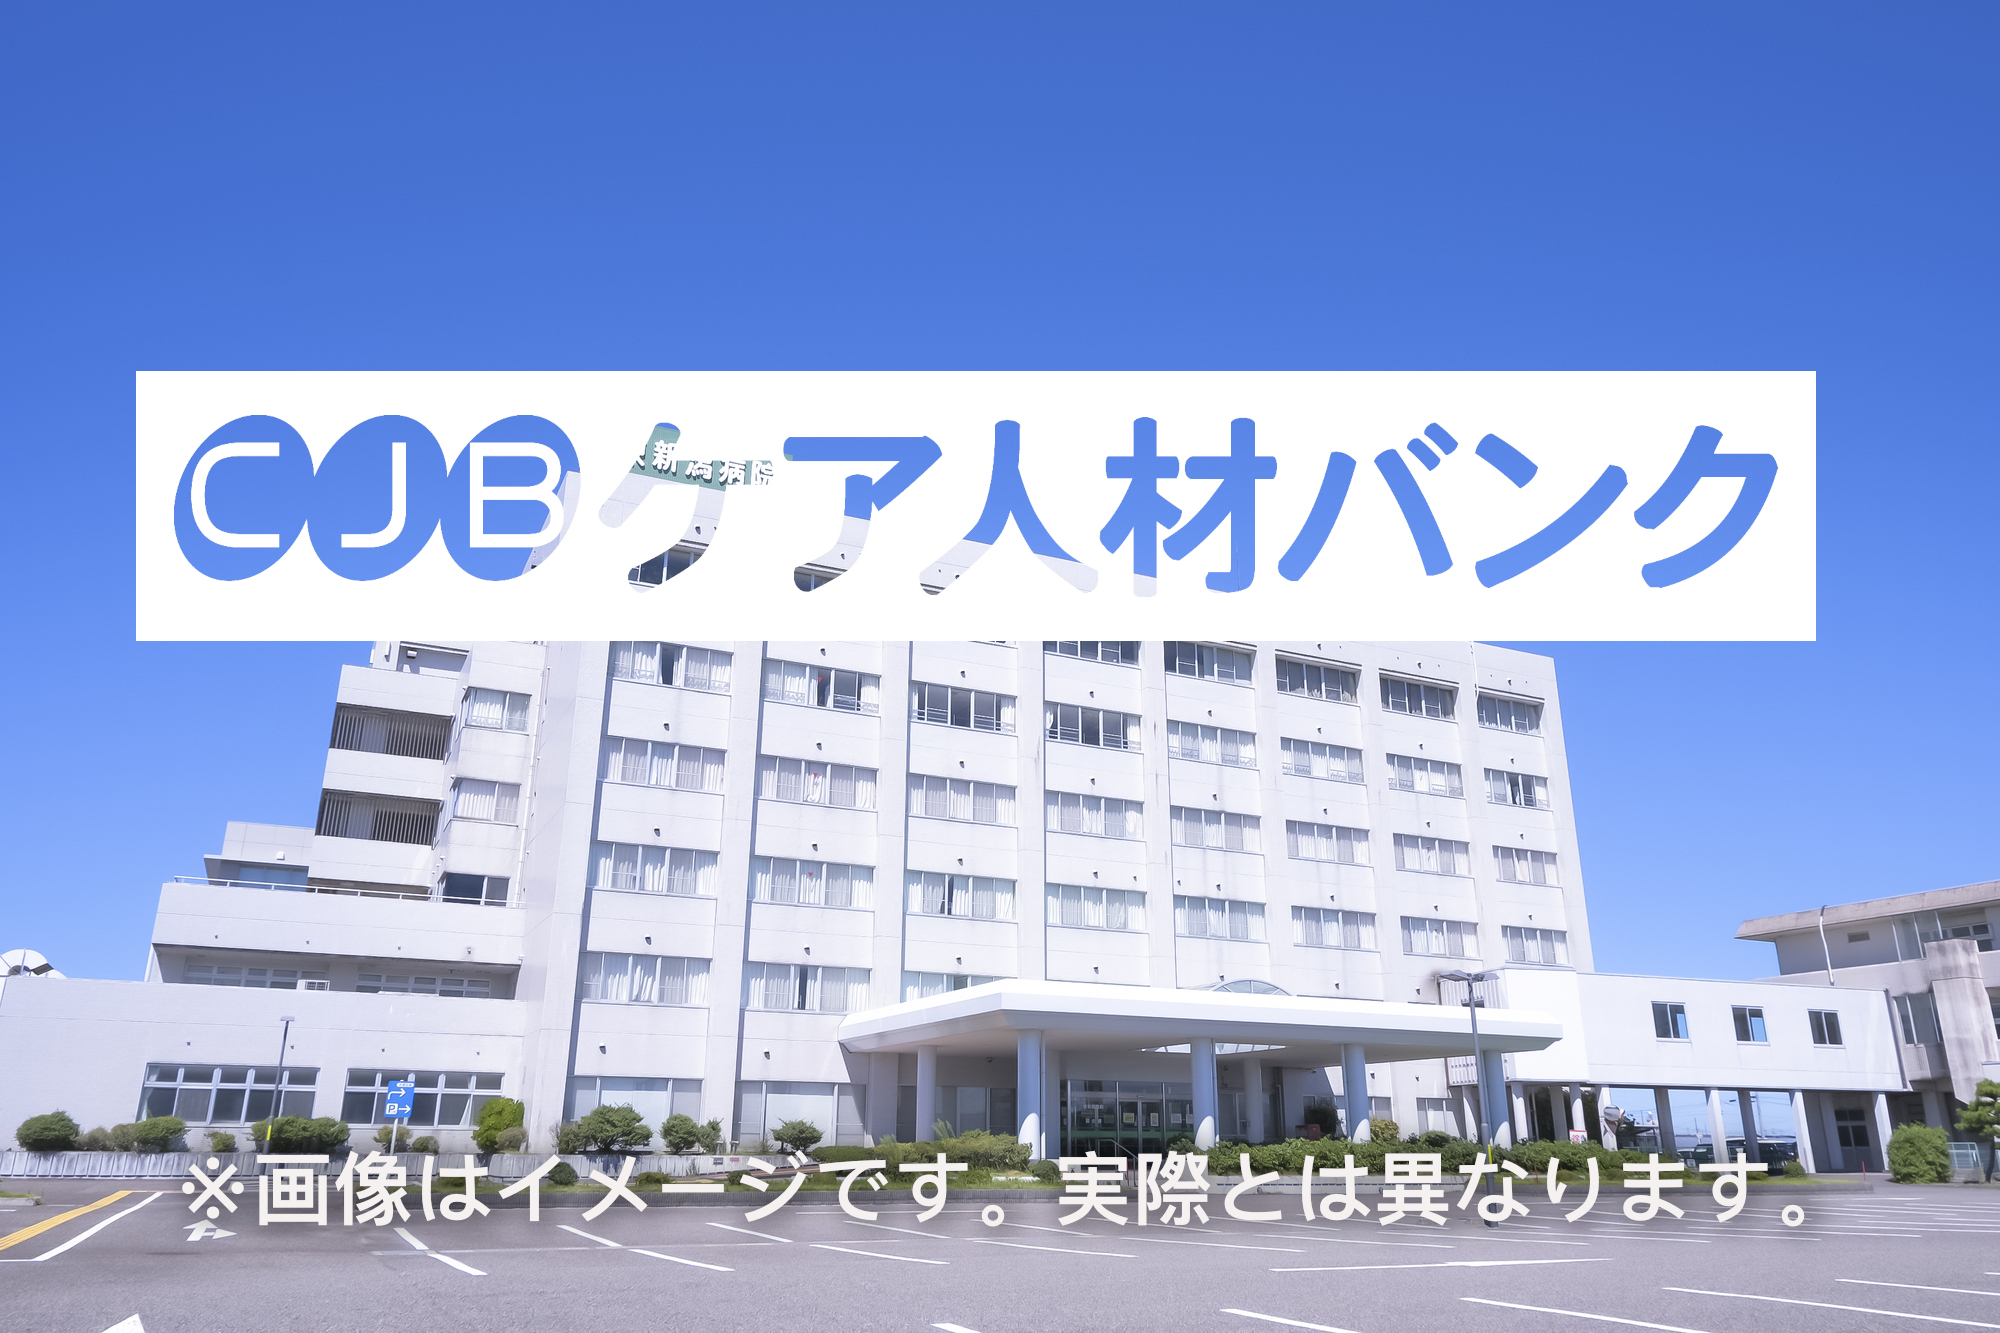 相模ヶ丘病院 のイメージ画像